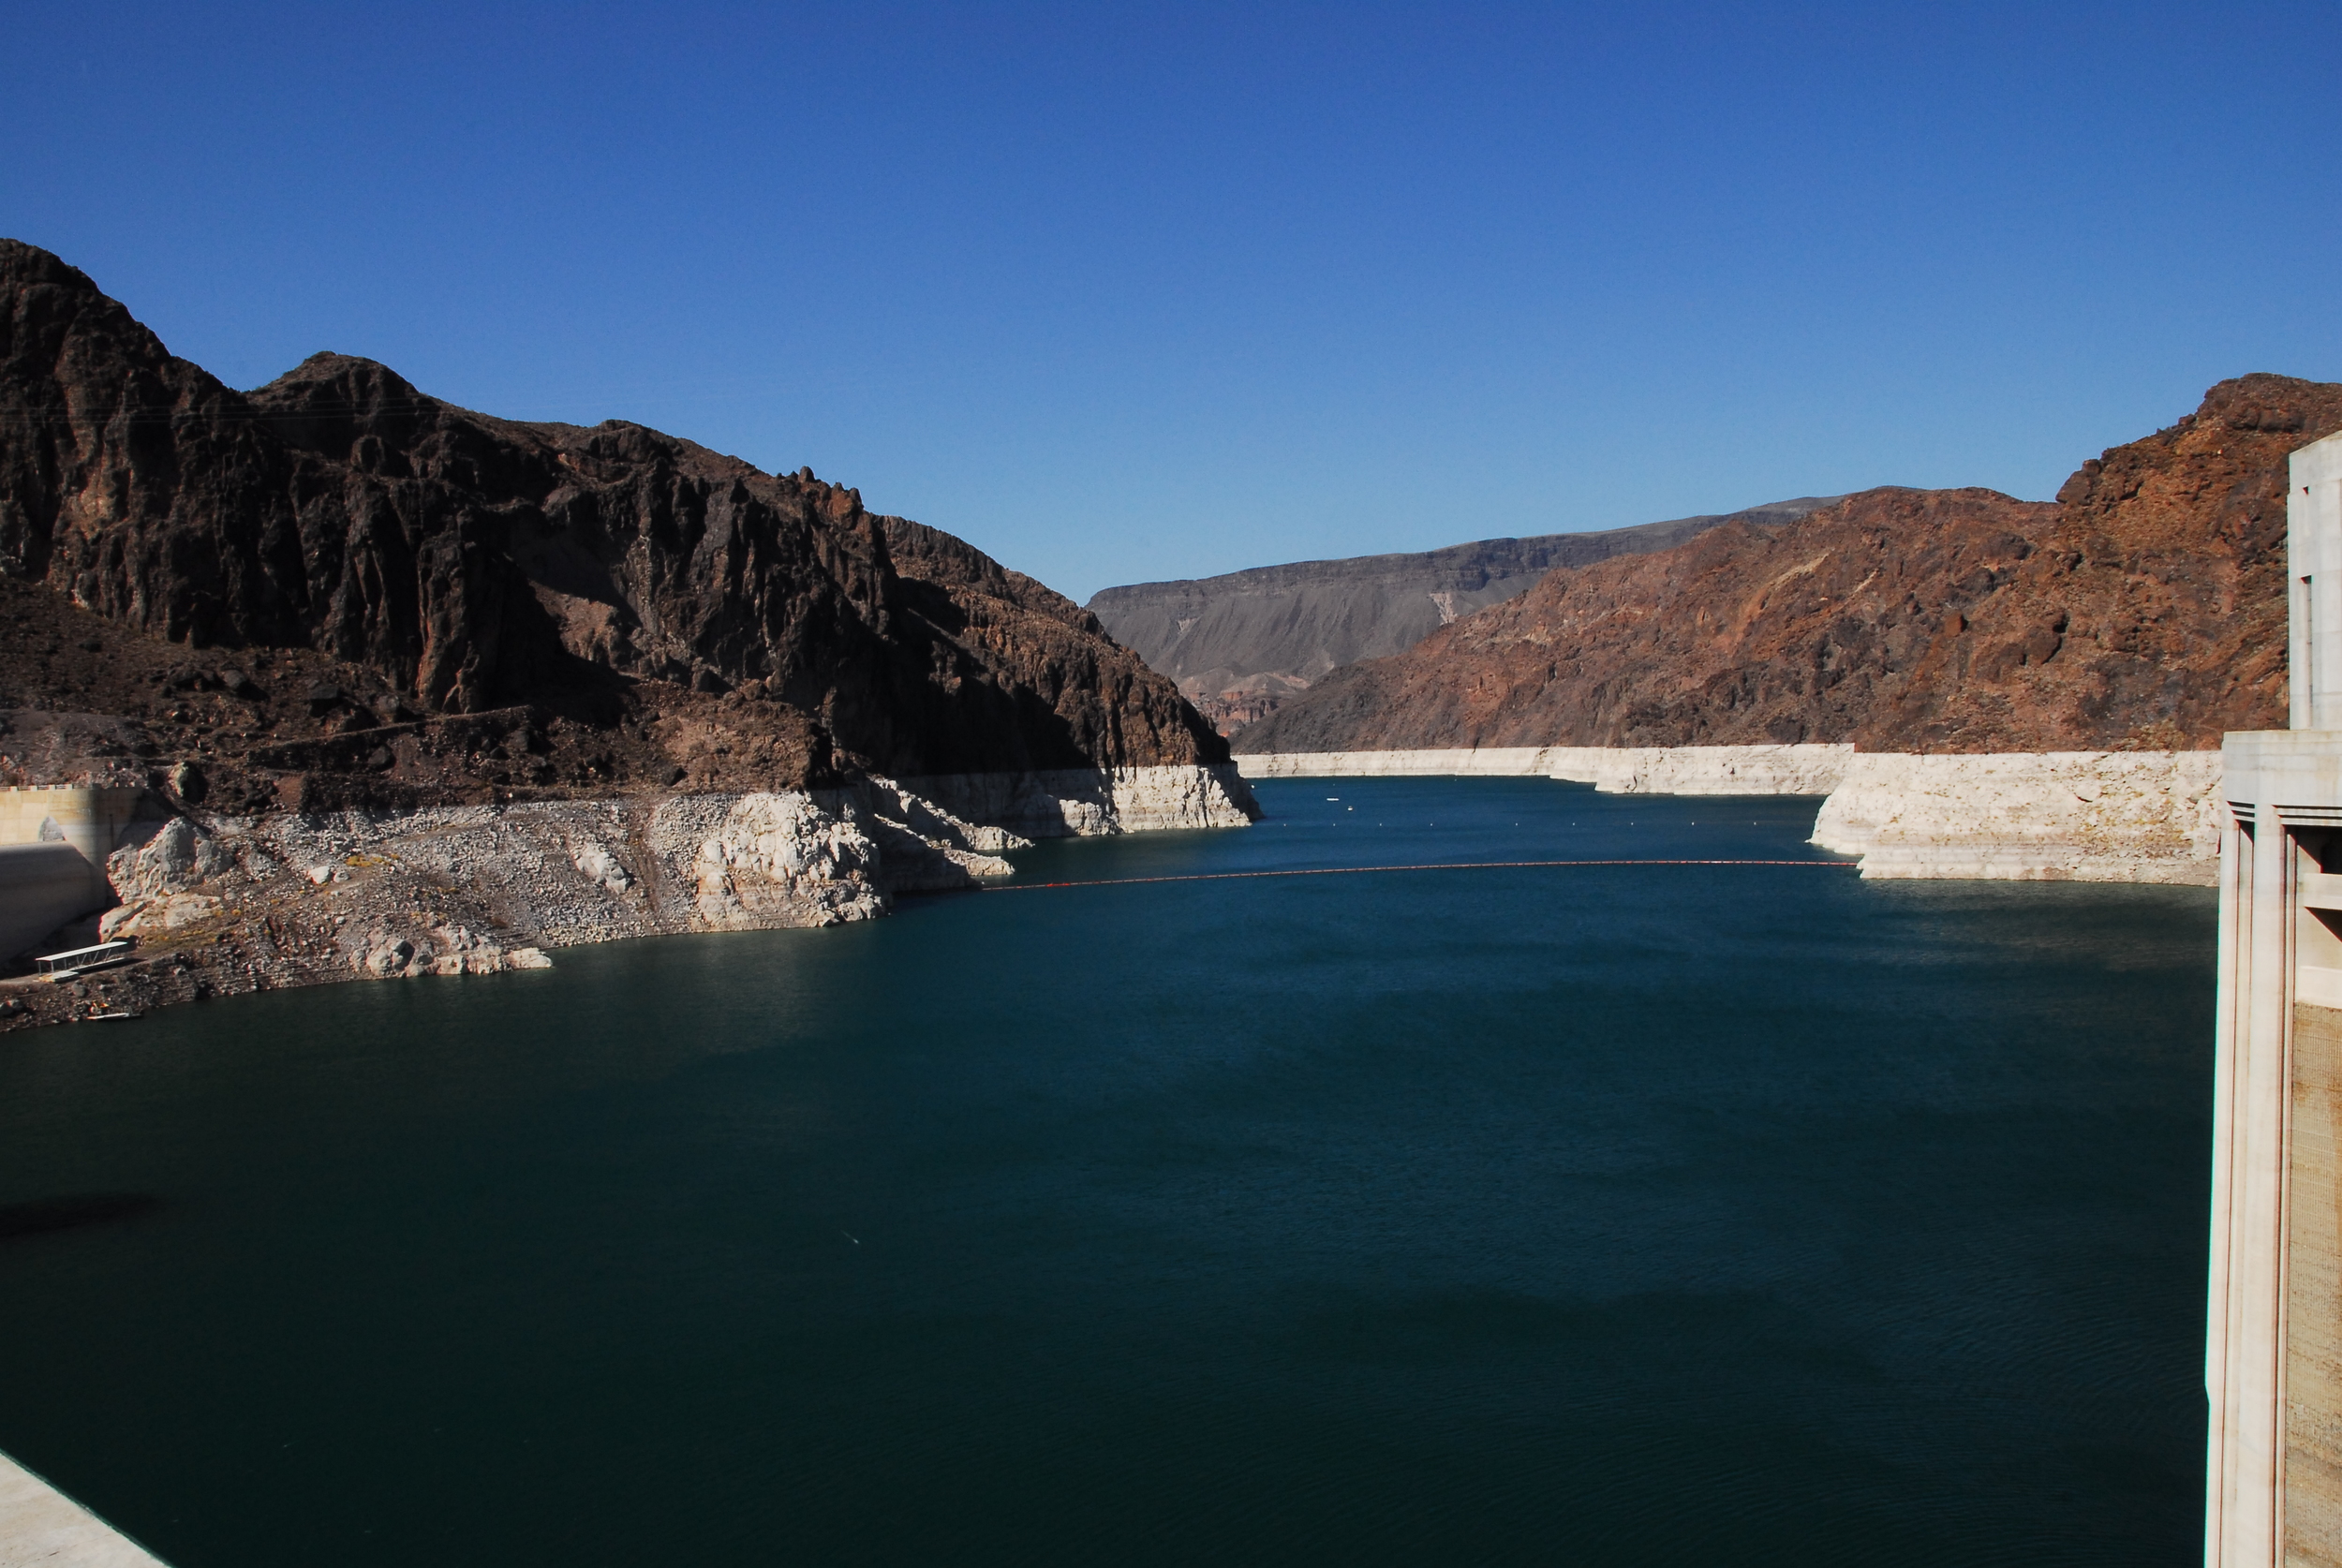 07_Hoover Dam 040.jpg